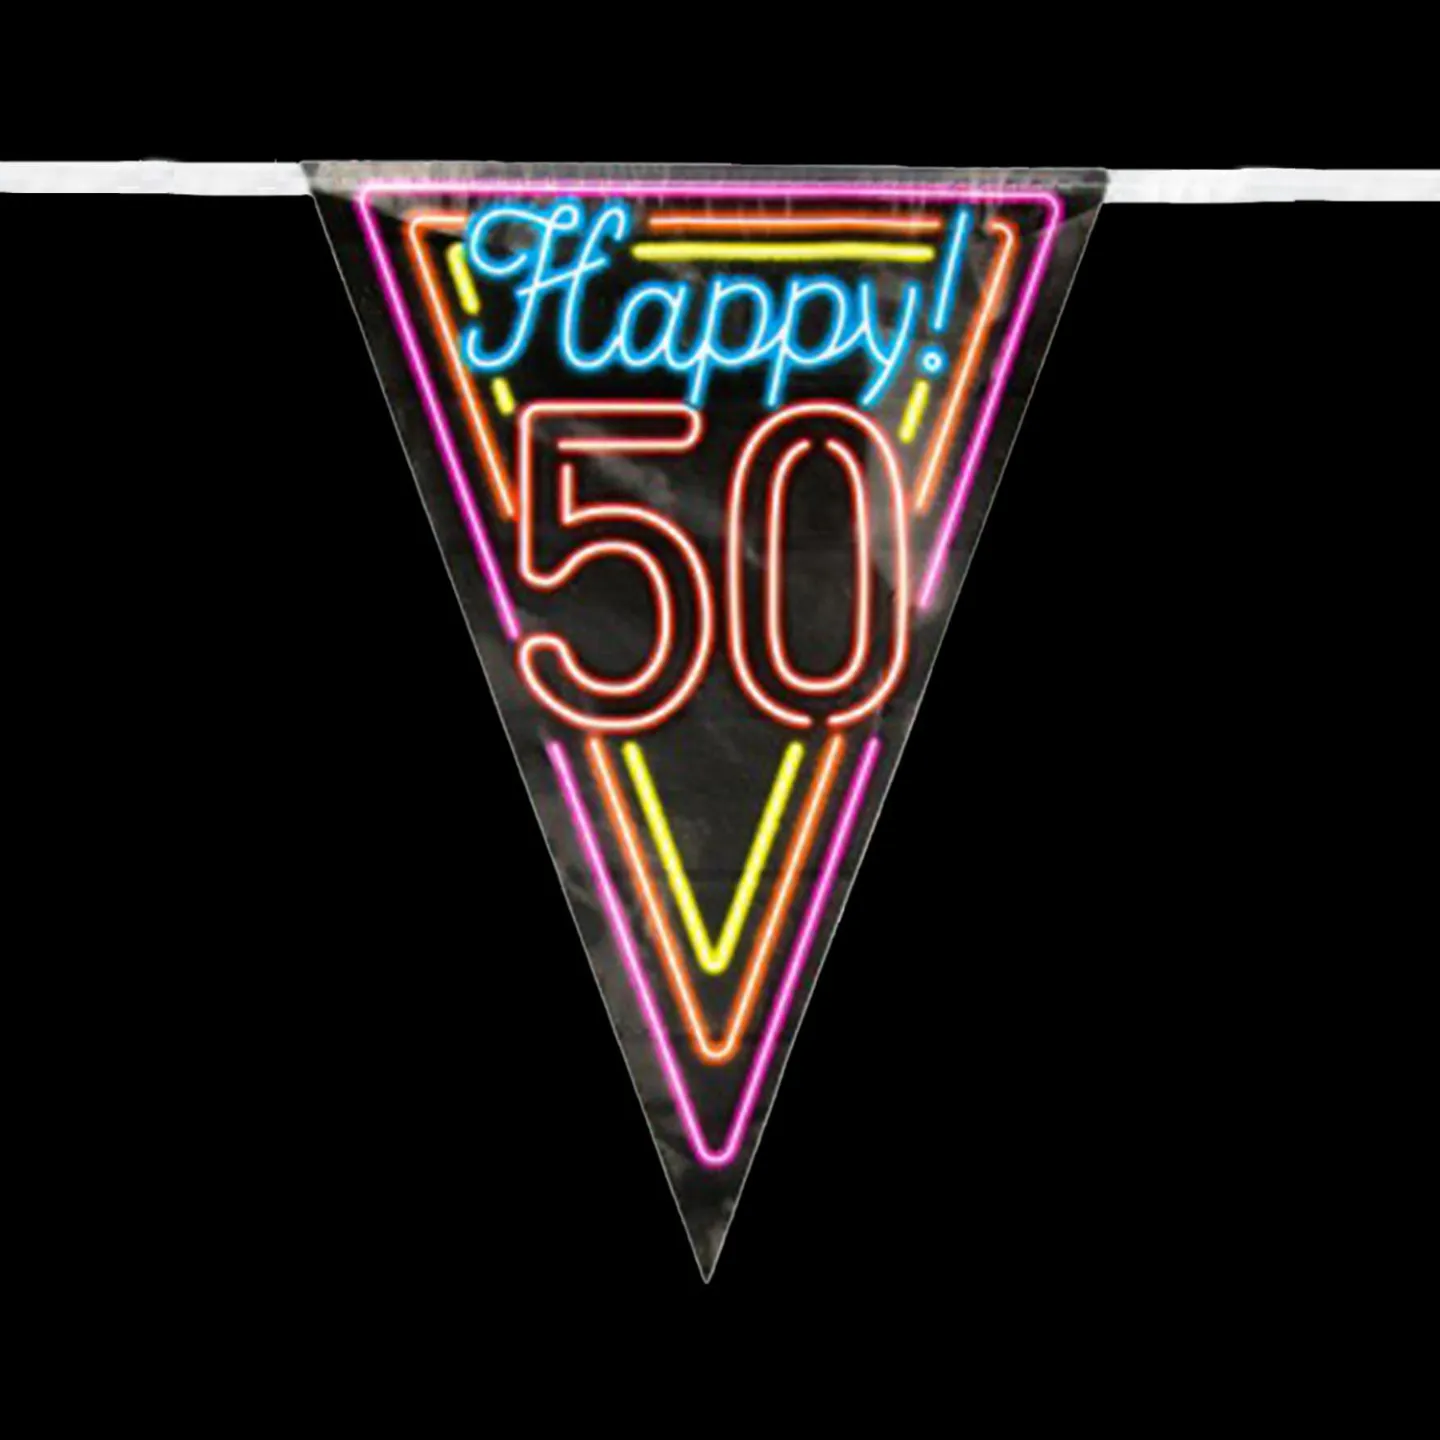 vlaggenlijn neon 50 jaar.